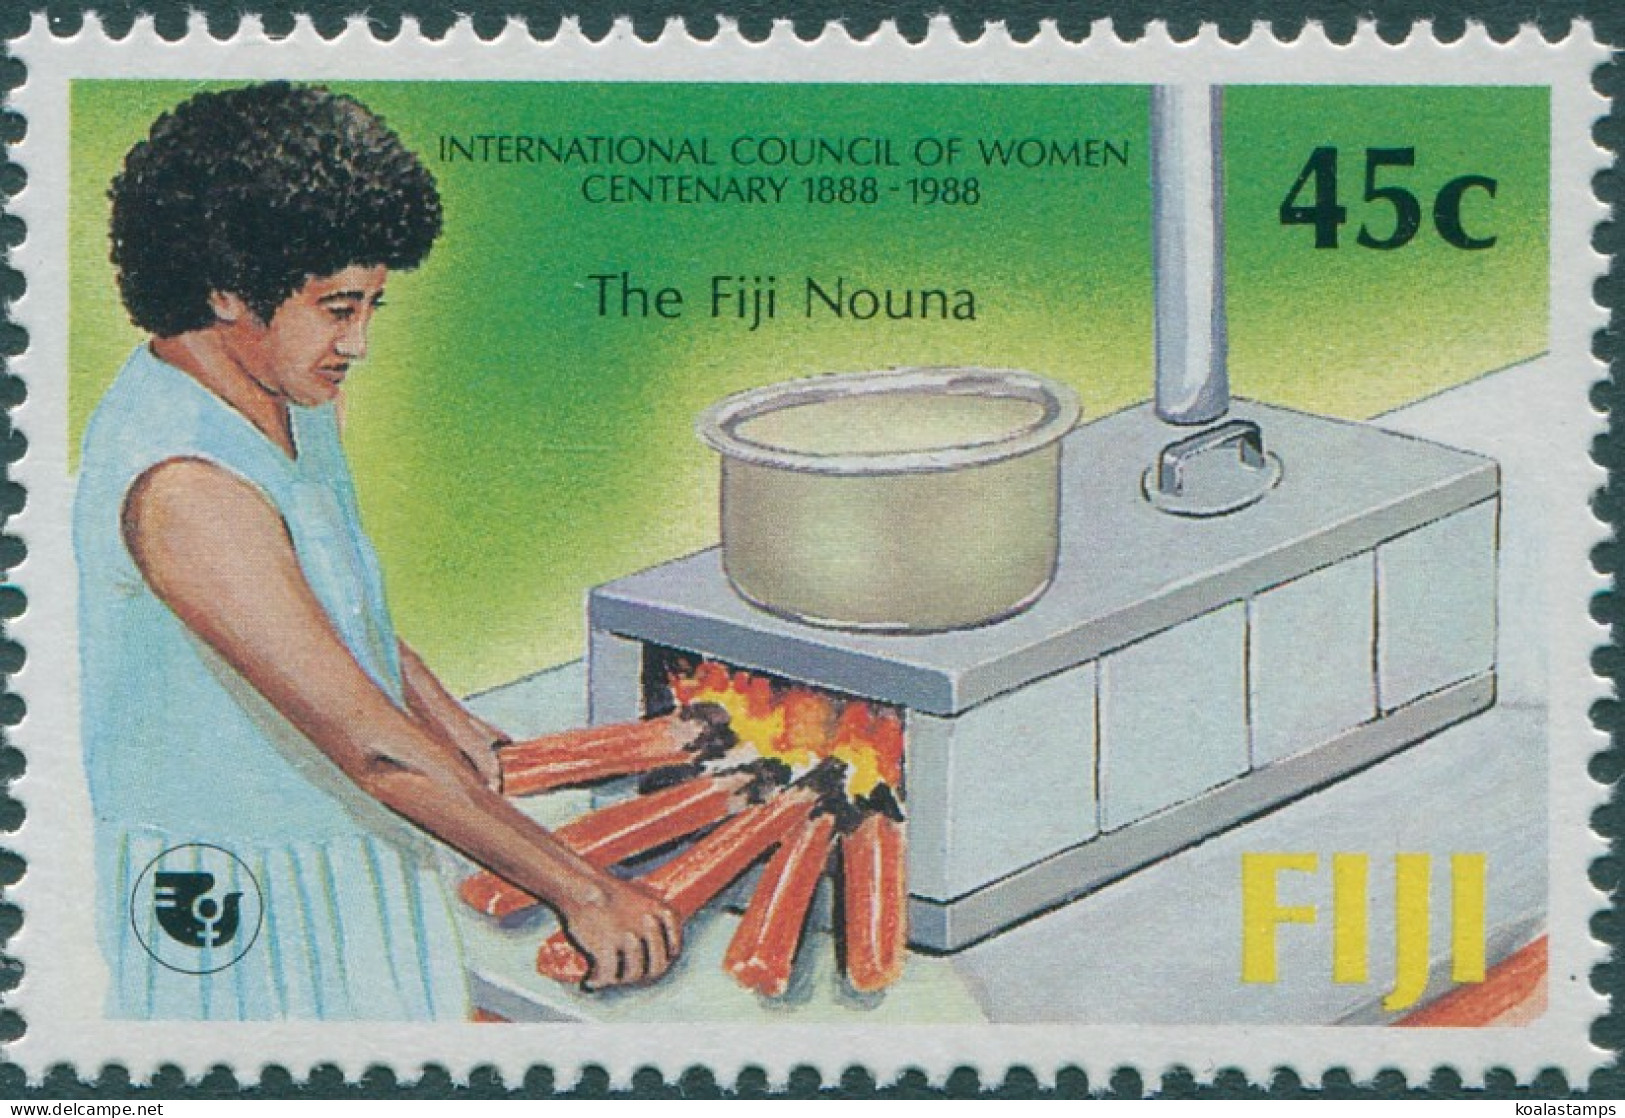 Fiji 1988 SG771 45c Council Of Women MNH - Fiji (1970-...)